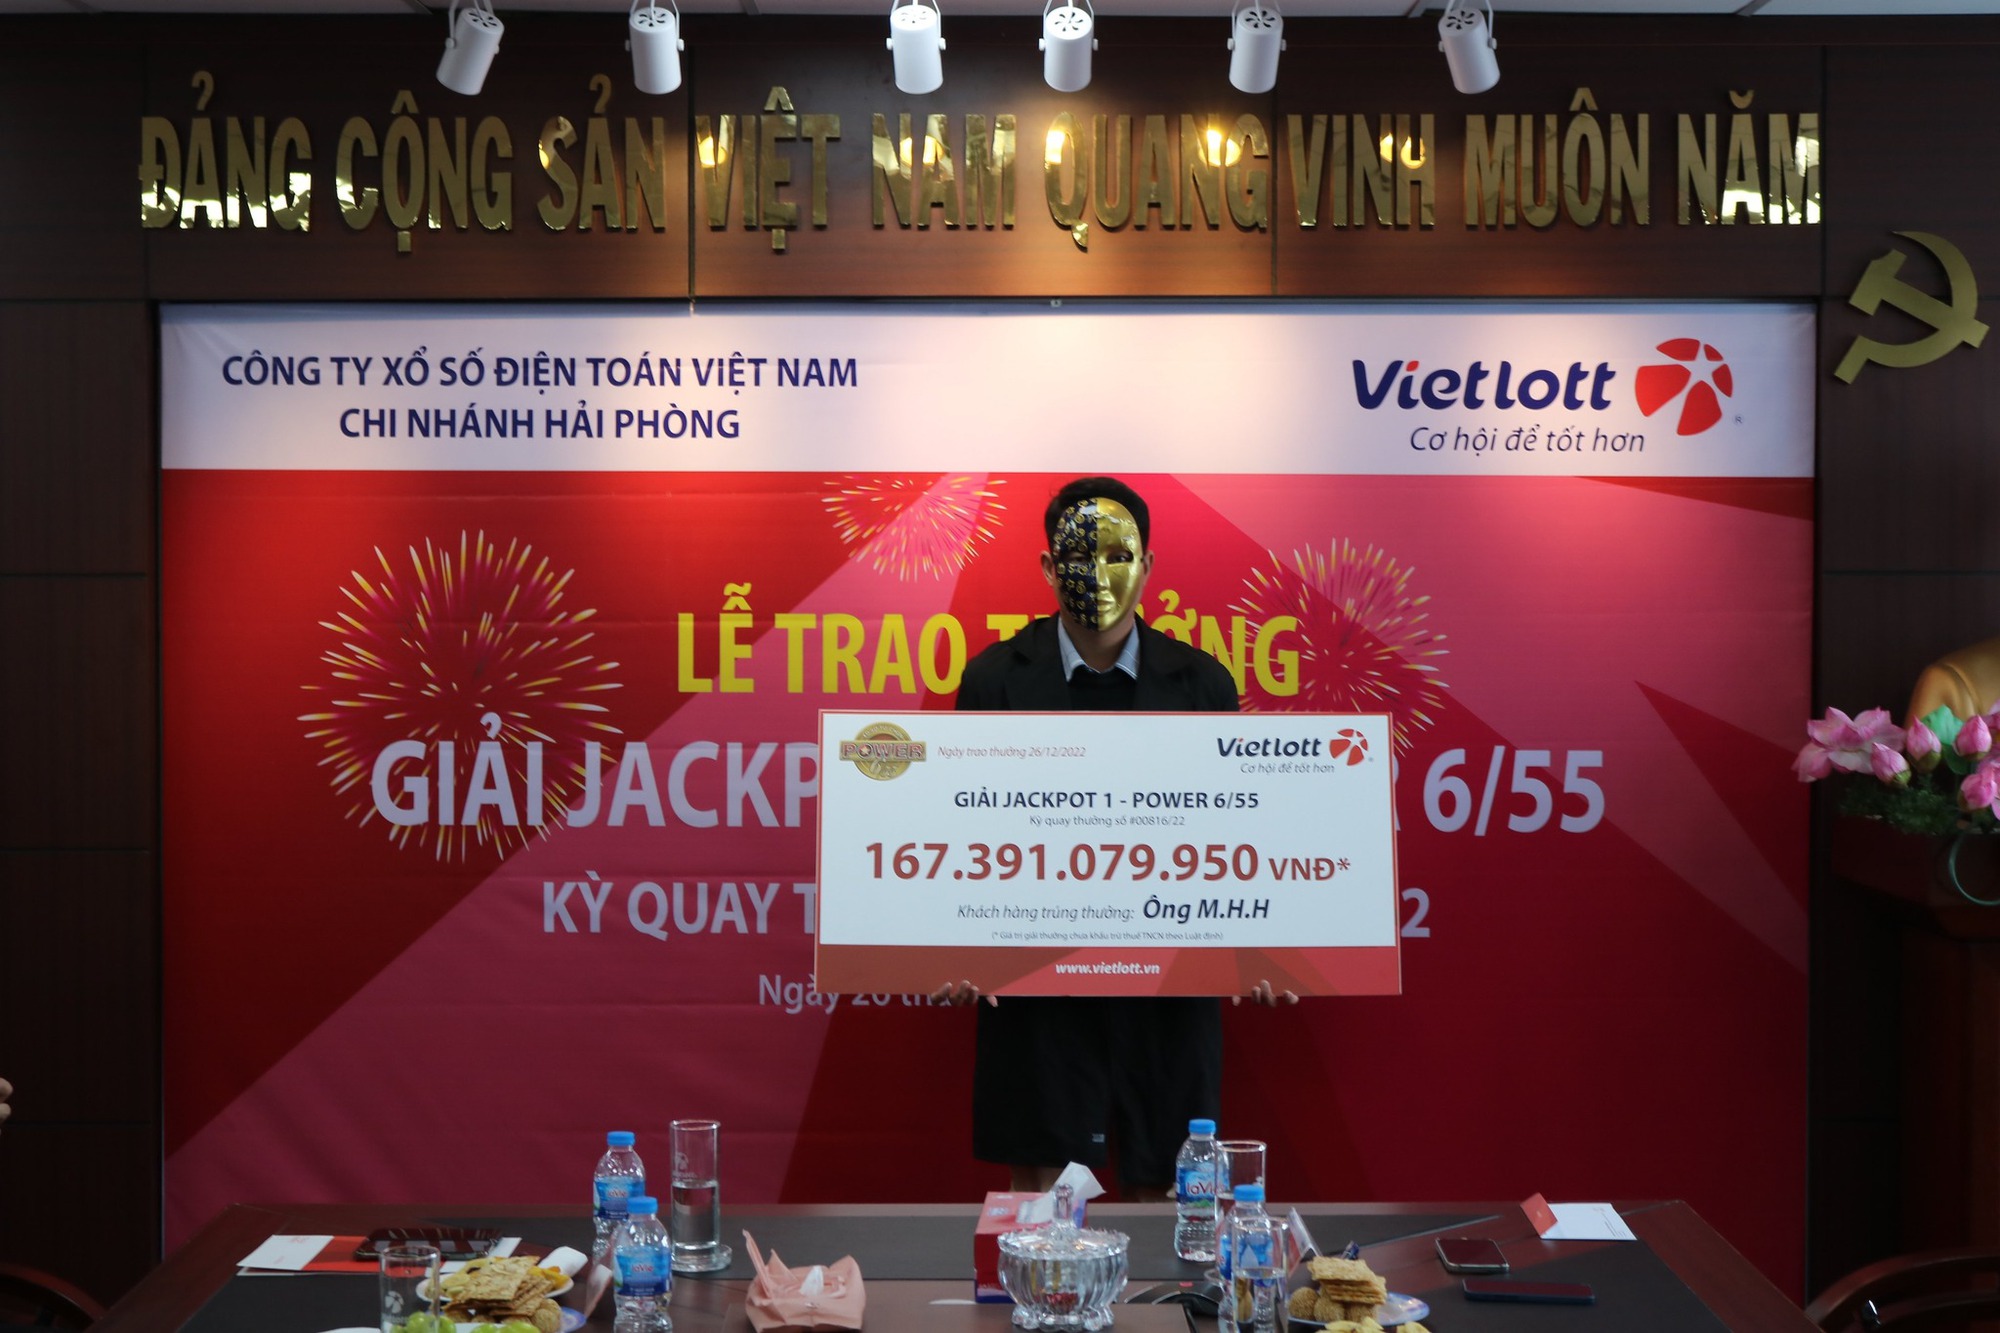 Kinh doanh khấm khá, Vietlott muốn mở dịch vụ đặt cược bóng đá quốc tế hợp pháp ở Việt Nam - Ảnh 2.